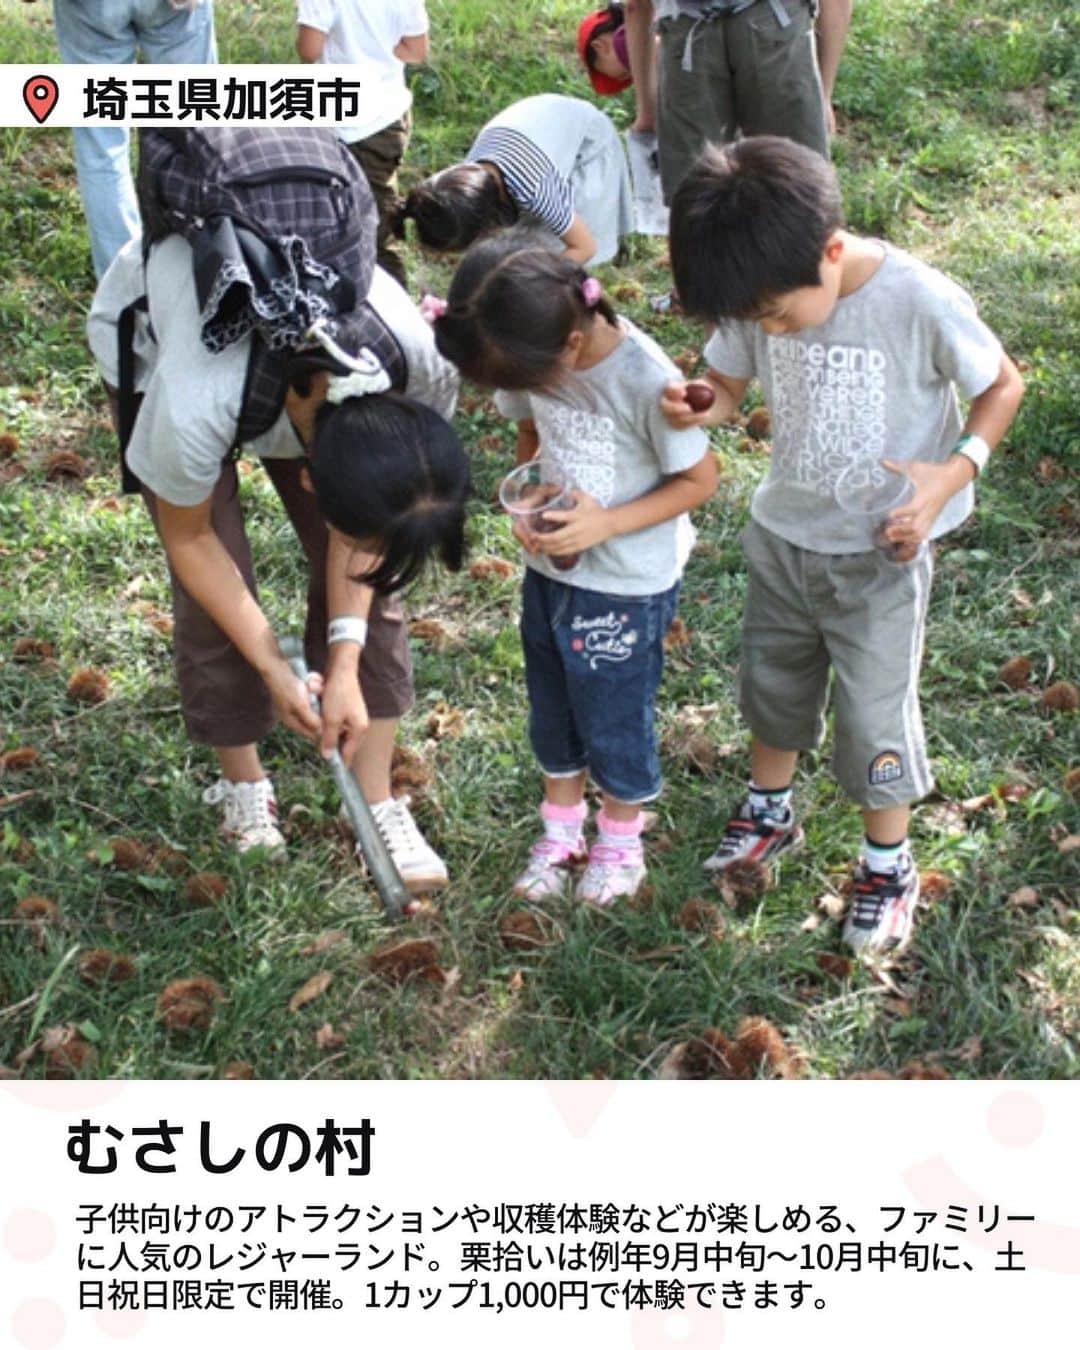 iko-yo（いこーよオフィシャル）さんのインスタグラム写真 - (iko-yo（いこーよオフィシャル）Instagram)「今回ピックアップしたのは「親子で味覚狩り！東京近郊おすすめ栗拾いスポット4選」 @ikoyo_odekakeに他の投稿も！ ーーーーーーーーーーーーーーーーーー 📍 埼玉県加須市 【むさしの村】 #むさしの村 @musashinomura1700 子供向けのアトラクションや収穫体験などが楽しめる、ファミリーに人気のレジャーランド。東北自動車道・加須ICから車で約20分の場所にあります。 栗拾いは例年9月中旬〜10月中旬に、土日祝日限定で開催。1カップ（約500〜600g）1,000円で体験できます（入園料は別途必要、中学生以上1200円、3歳以上650円）。受付は当日ファミリー館のフロントにて、9:30より開始。定員数が埋まり次第受付を終了してしまうため、早めにでかけるのがおすすめです。  📍 埼玉県所沢市 【田中ぶどう園】 #田中ぶどう園 関越自動車道・所沢ICから車で約20分。都内から気軽にアクセスできる家族経営の観光農園です。ぶどう園という名称ですが、栗拾いも楽しめます。 栗拾いは例年9月中旬〜10月中旬頃、土日祝日限定で開催。栗園はぶどう園の奥にあり、最盛期には大粒の栗の実がたくさん落ちています。栗拾いもぶどう狩りも収穫した量に応じて支払う重量制で、栗は100g100円、ぶどうは100g80円〜（品種による）。また、別途入園料（中学生以上500円、3歳〜小学生400円／栗園・ぶどう園共通）が必要です。 軍手やトングの貸し出しはないので、どちらかを持参しましょう。 ※2023年度は上記より値上げ予定  📍 千葉県成田市 【成田ゆめ牧場】 #成田ゆめ牧場 @yumebokujo アクセスは東関東自動車道の下総ICから車で約2分。栗拾い体験は、例年9月中旬〜10月中旬頃に実施。収穫できるのは1グループ500gまで。参加費用は900円です。別途、牧場の入場料が必要になります（中学生以上1,900円、4歳〜小学生1,000円、シニア1,700円）。 WEBでの事前予約が必須で、料金も事前支払いが必要です。開催時間は日によって異なるので、予約時にサイトで確認しましょう。授乳室は園内に3カ所あります。ベビーカーの貸し出し（１台400円）も行っており、赤ちゃん連れでも安心して楽しめますよ。  📍神奈川県相馬原市 【藤野園芸ランド】 #藤野園芸ランド 神奈川県相模原市緑区の名倉地区に点在する農家が協力して運営している観光農園。作物が採れる時期に、各農家で収穫体験ができます。 栗拾い体験は例年9〜10月頃に行われています。でかける前に、栗を栽培している農家に連絡して予約をしましょう。入園は無料で、収穫した作物の分だけ料金がかかるシステムです。  ※2023年10月09日時点の情報です。 最新の情報は公式HPや「いこーよ」サイトでご確認ください。 ーーーーーーーーーーーーーーーーーーー おでかけ情報量は日本最大級！ 子どもとお出かけ情報サイト「いこーよ」 「親子でおでかけしたい場所」をご紹介させていただいています！  お子さんとのおでかけの思い出の写真を、このアカウントをフォローの上#いこーよ #いこーよおでかけ部 をつけてぜひ投稿してください。魅力的な写真は、いこーよ公式SNSで紹介させていただきます！  募集中タグ#いこーよ #いこーよおでかけ部  「子どもと行きたい！」と思ったら保存が便利！ プロフィールのURLから「いこーよ」のサイトに行くと、他の投稿やオトクな情報などが載っています♪ ☞ @ikoyo_odekake  #いこーよ #お出かけ #おでかけ #お出かけスポット #子連れ #こどものいる暮らし #子連れスポット#子連れおでかけ #いこーよおでかけ部 #千葉ママ#千葉観光#神奈川ママ#神奈川観光 #埼玉ママ#埼玉観光#親子連れ#栗拾い#果物狩り#栗園#味覚狩り」10月9日 18時39分 - ikoyo_odekake